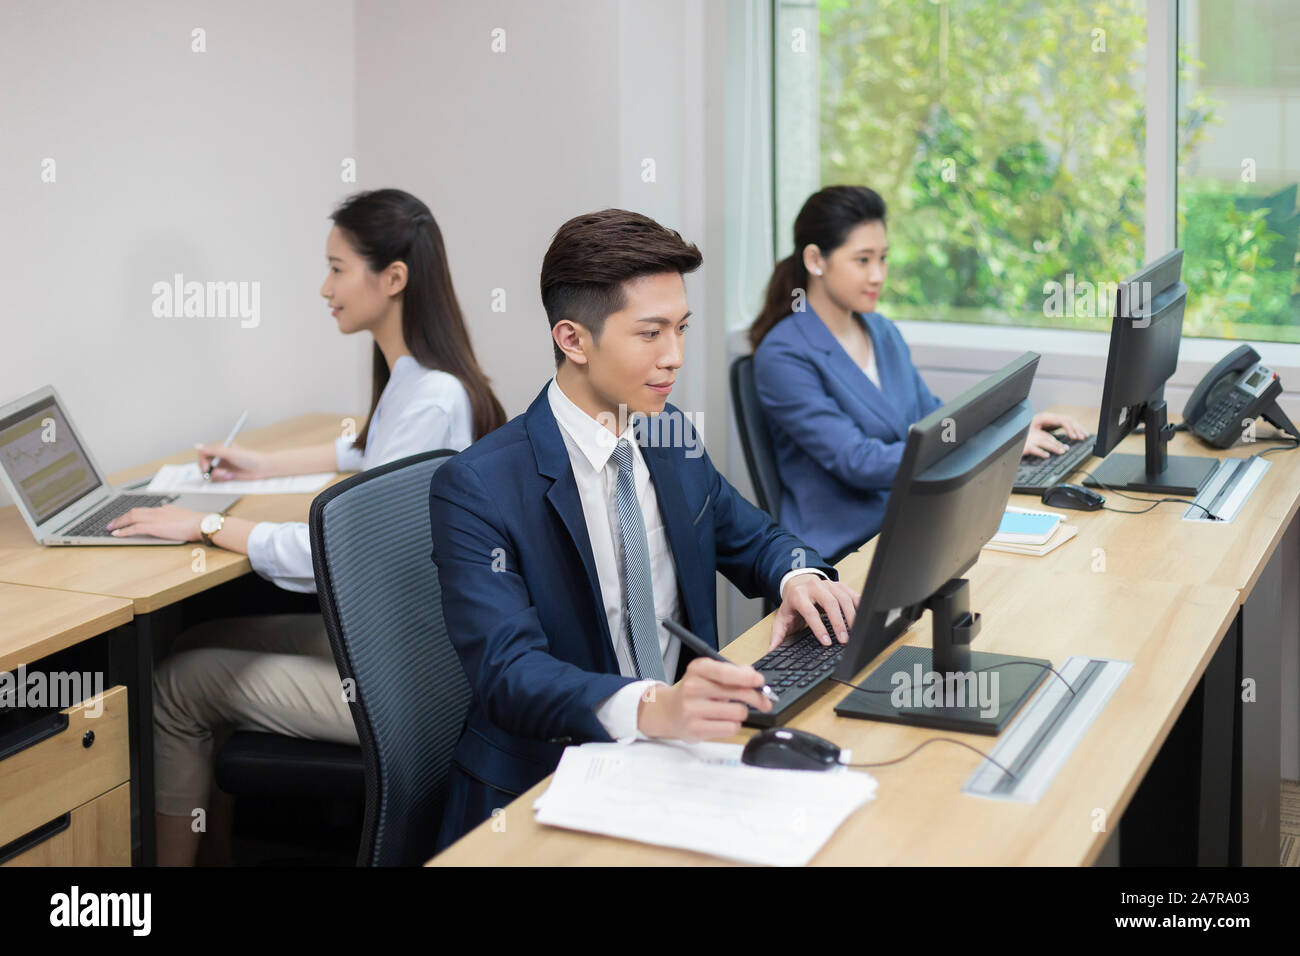 Fotografía de tres empresarios jóvenes, hombres y mujeres que trabajan en una oficina con dos usando computadoras y una utilización portátil Foto de stock